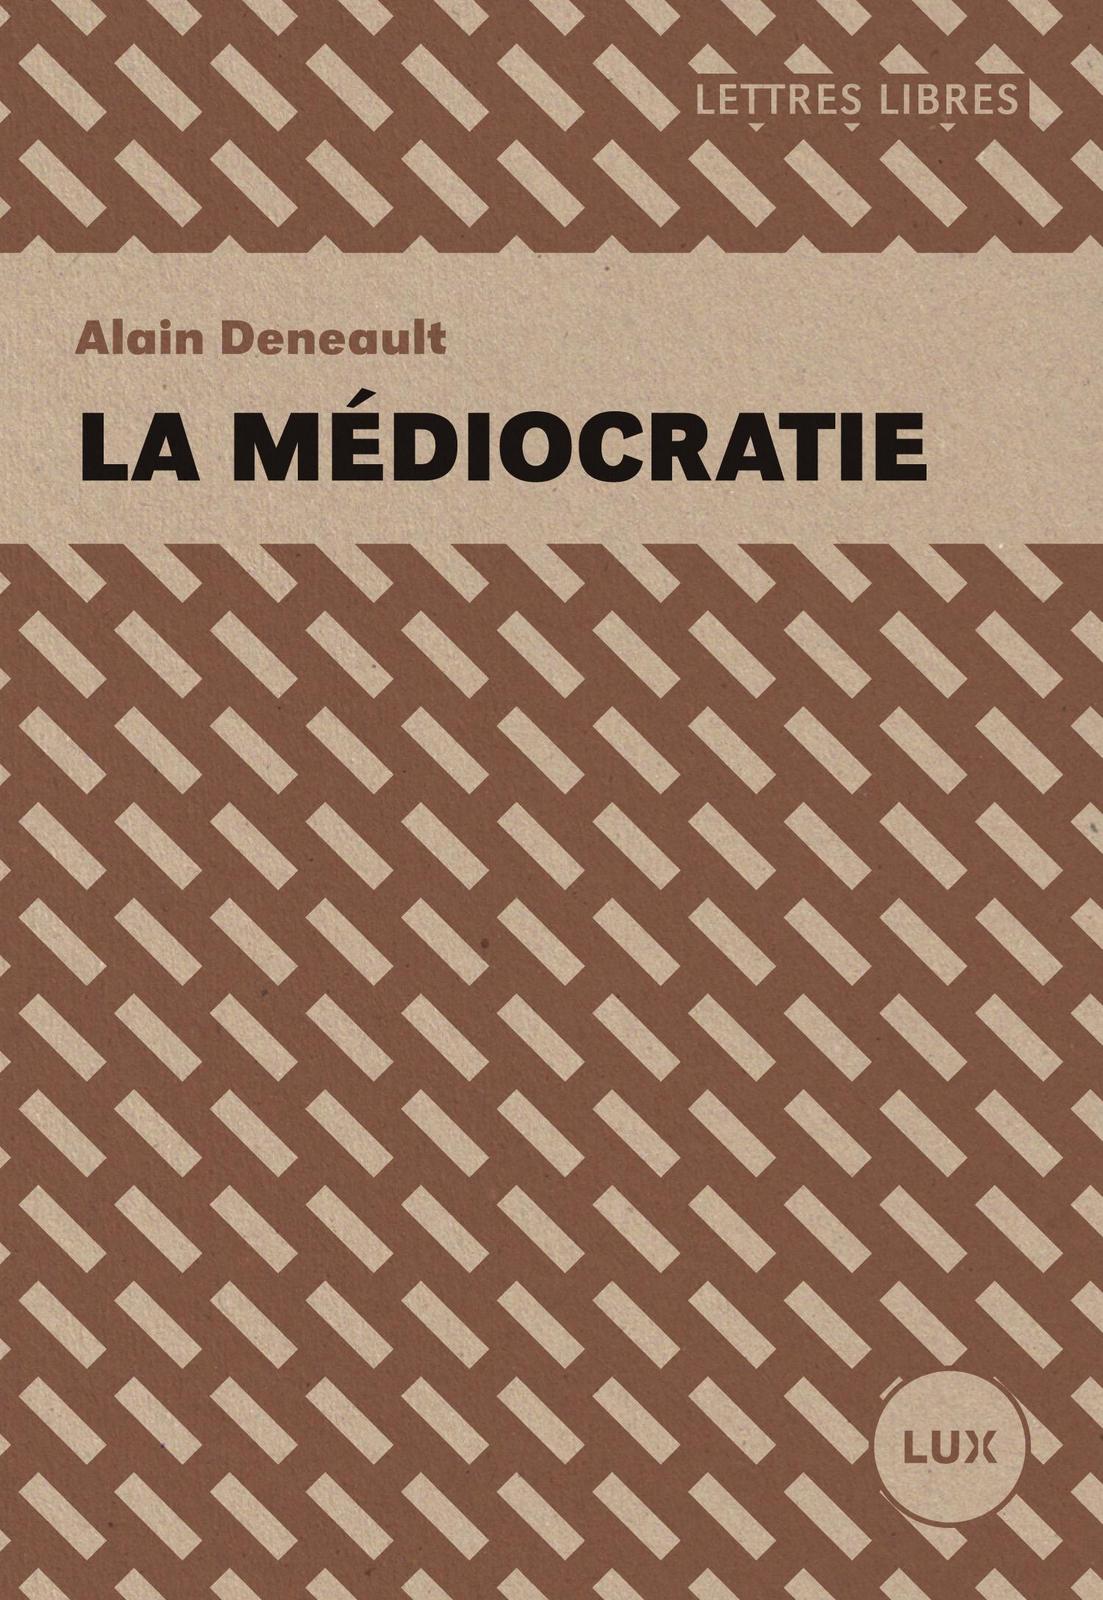 La médiocratie (French language, 2016)